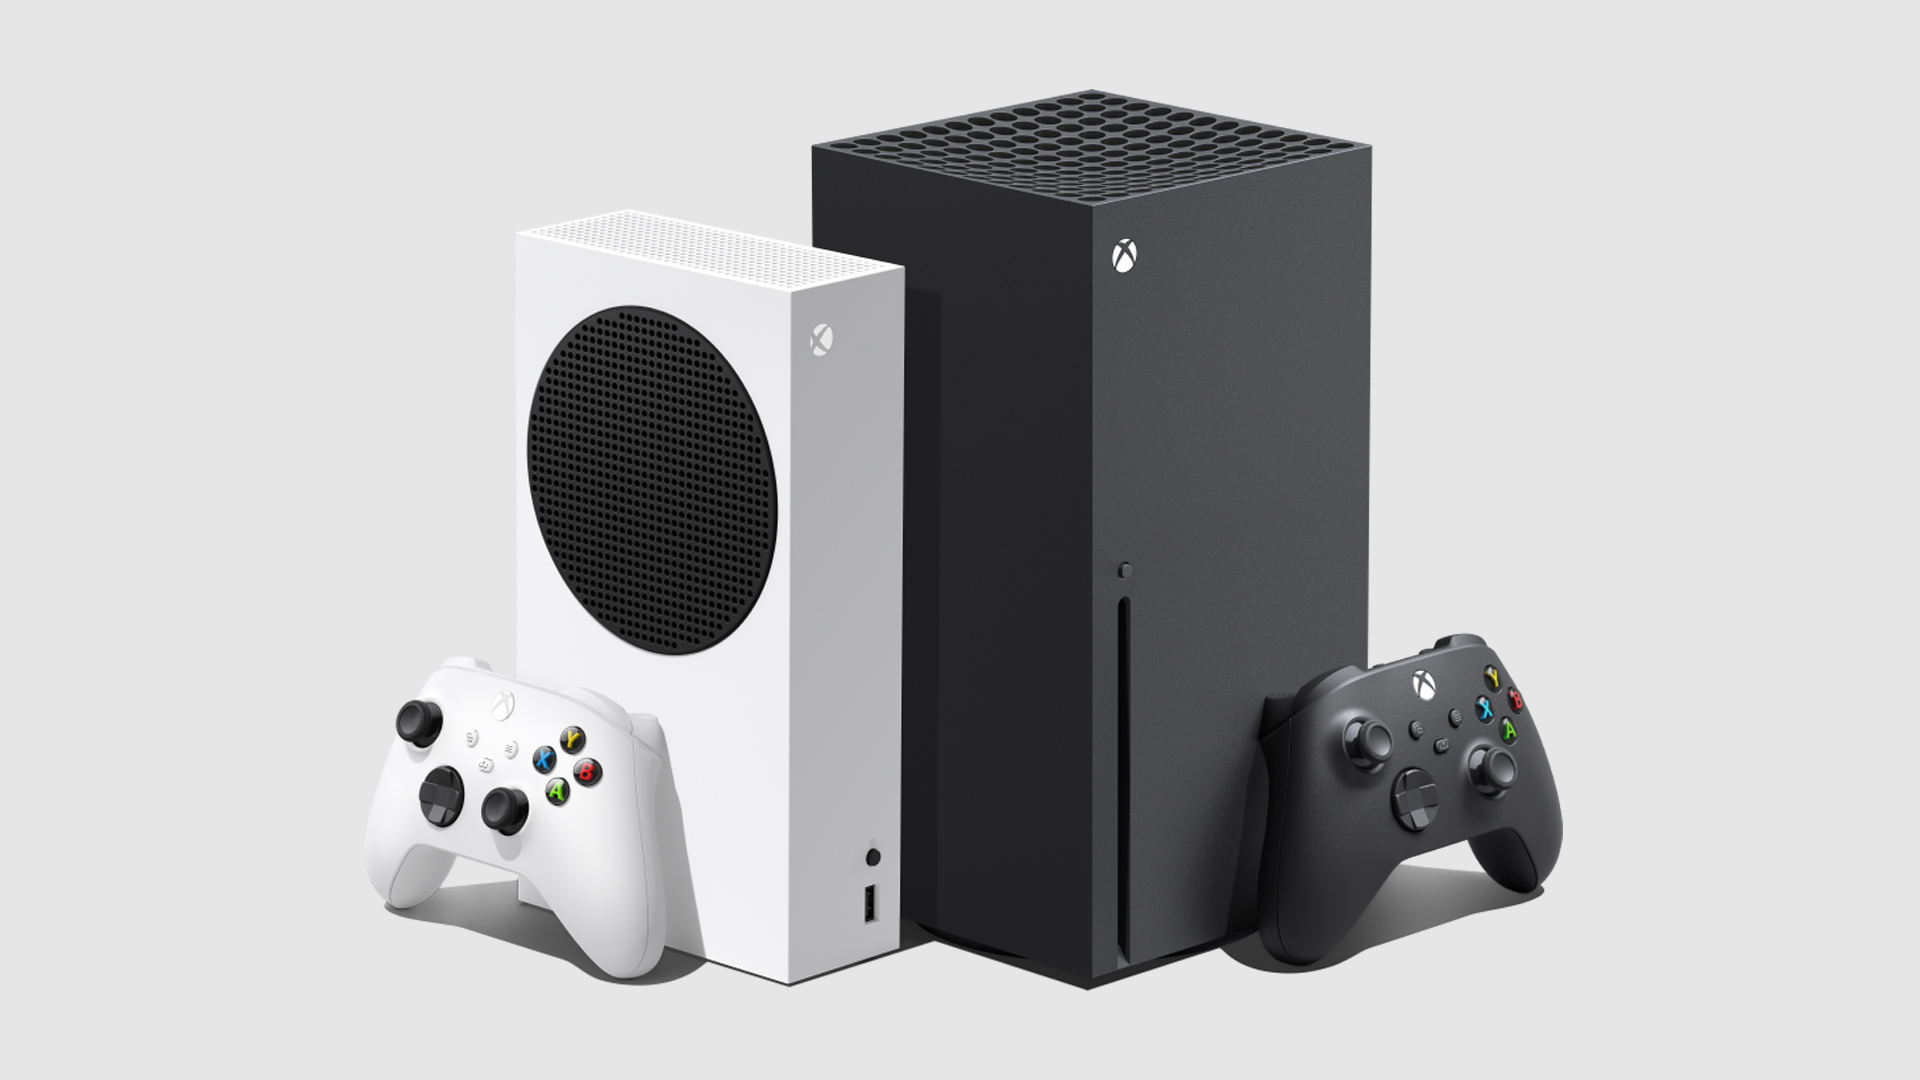 Zewnętrzni deweloperzy kwestionują możliwość przeniesienia swoich gier na konsole z serii Xbox